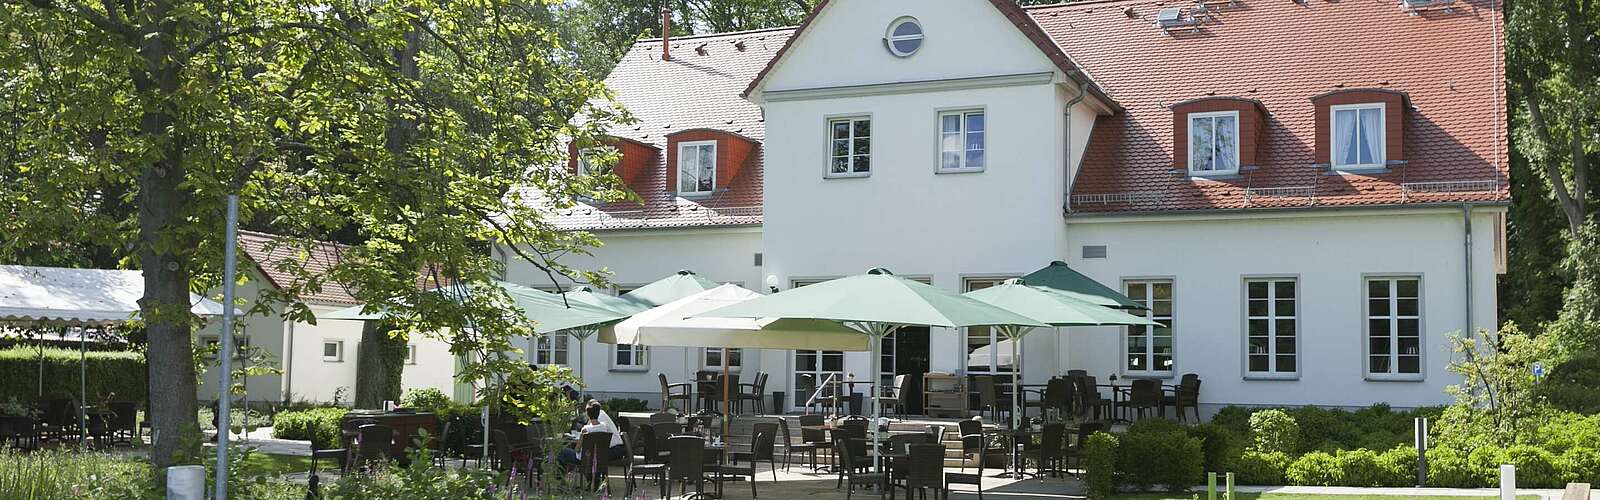 Café Wildau - Hotel &amp;amp; Restaurant am Werbellinsee,
        
    

        
            Foto: Café Wildau